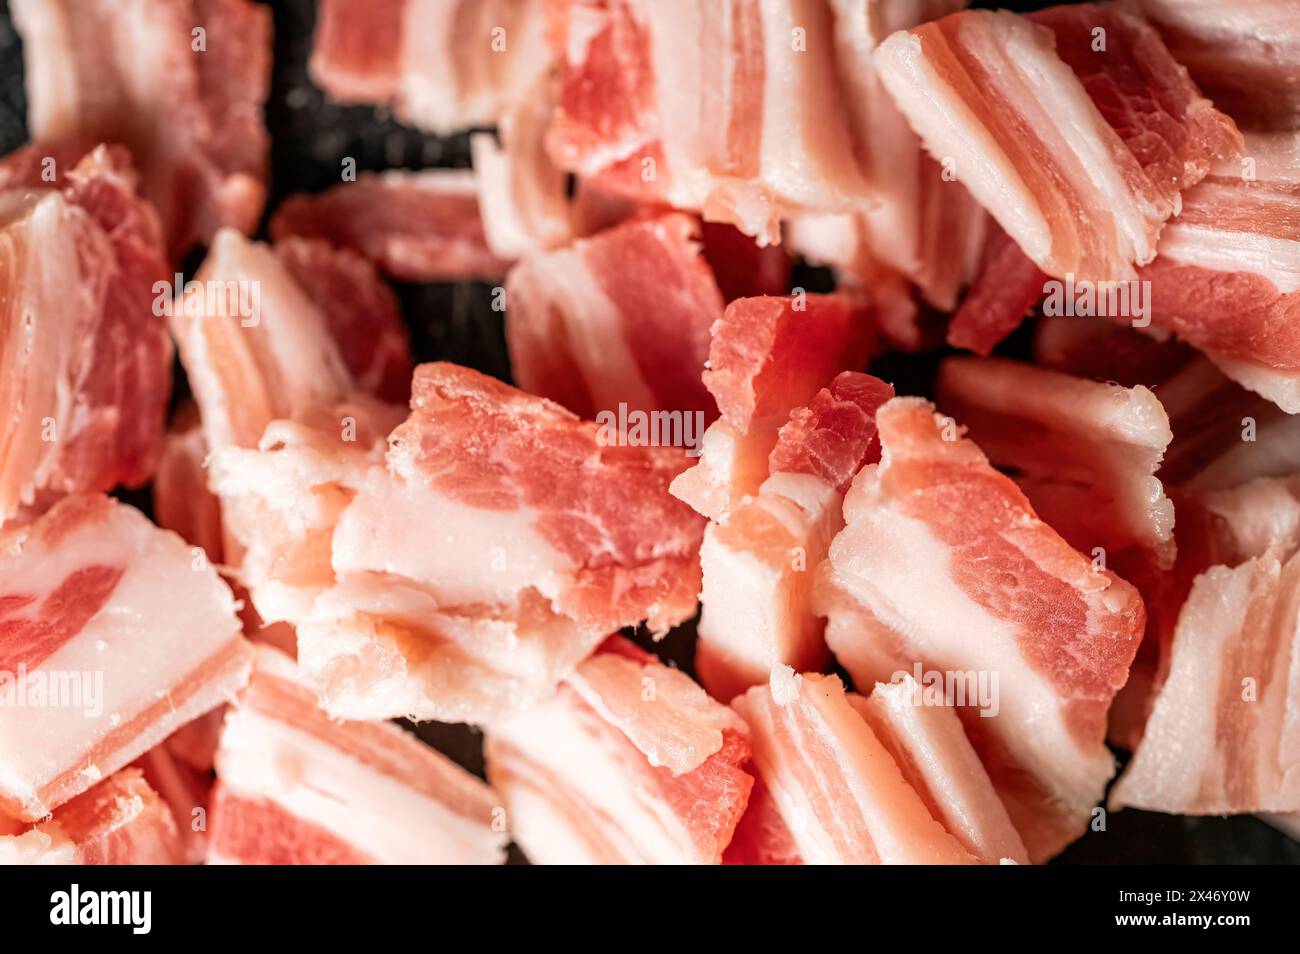 Morceaux de ventre de porc coupés en morceaux pour cuisiner un plat tel que spaghetti carbonara créant un fond Banque D'Images